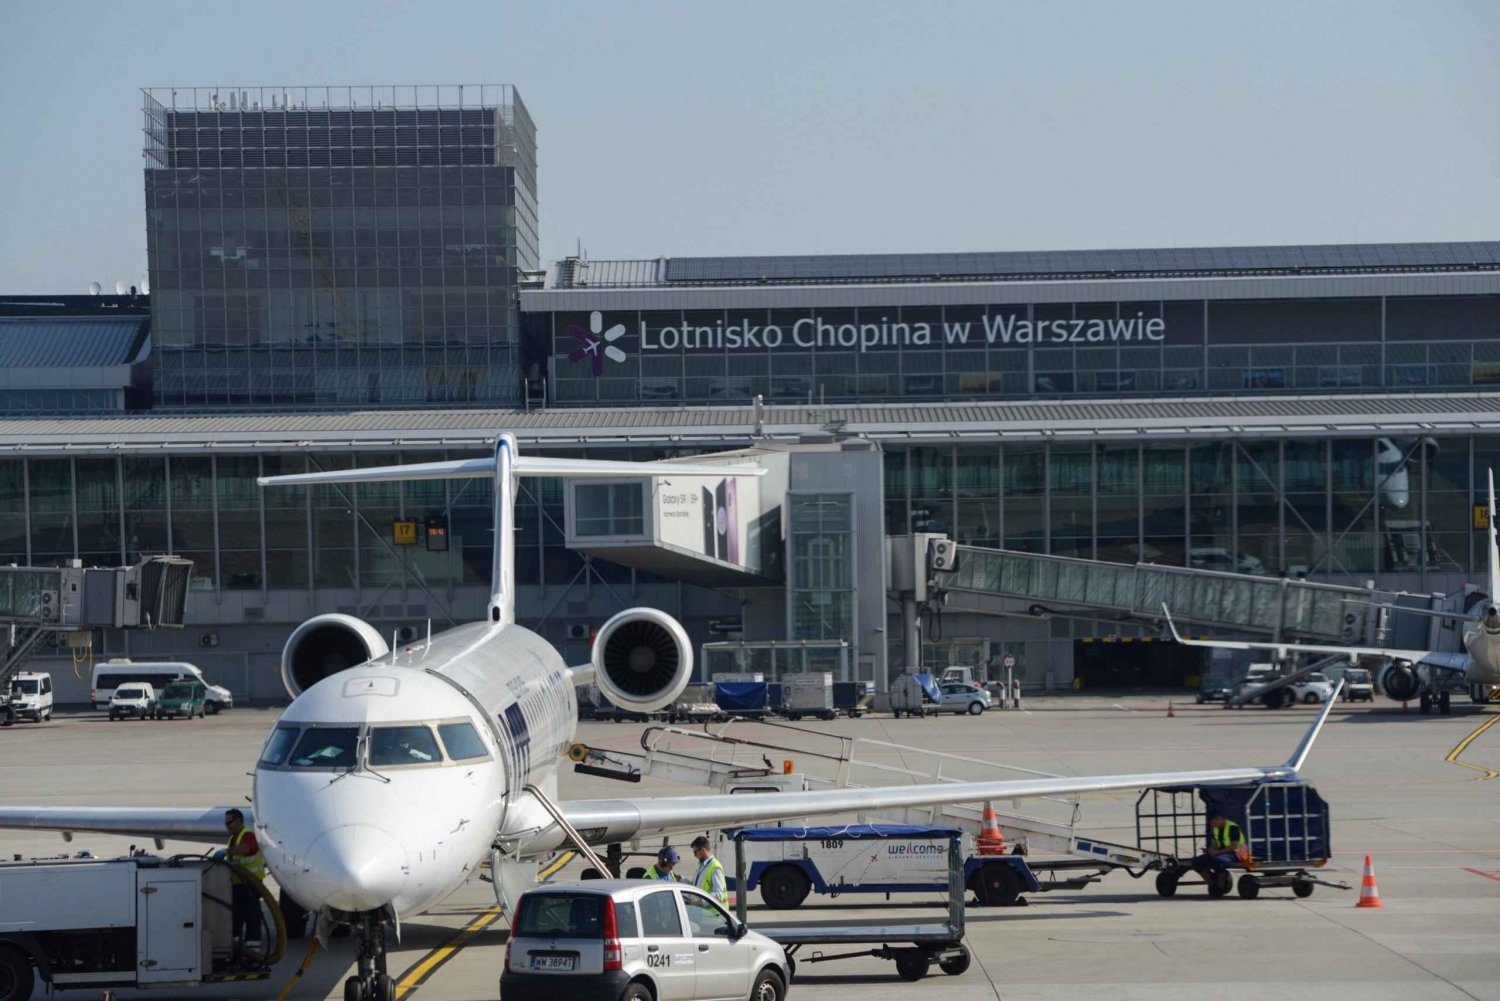 Prywatny transfer! Lotnisko Chopina w Warszawie - centrum Krakowa